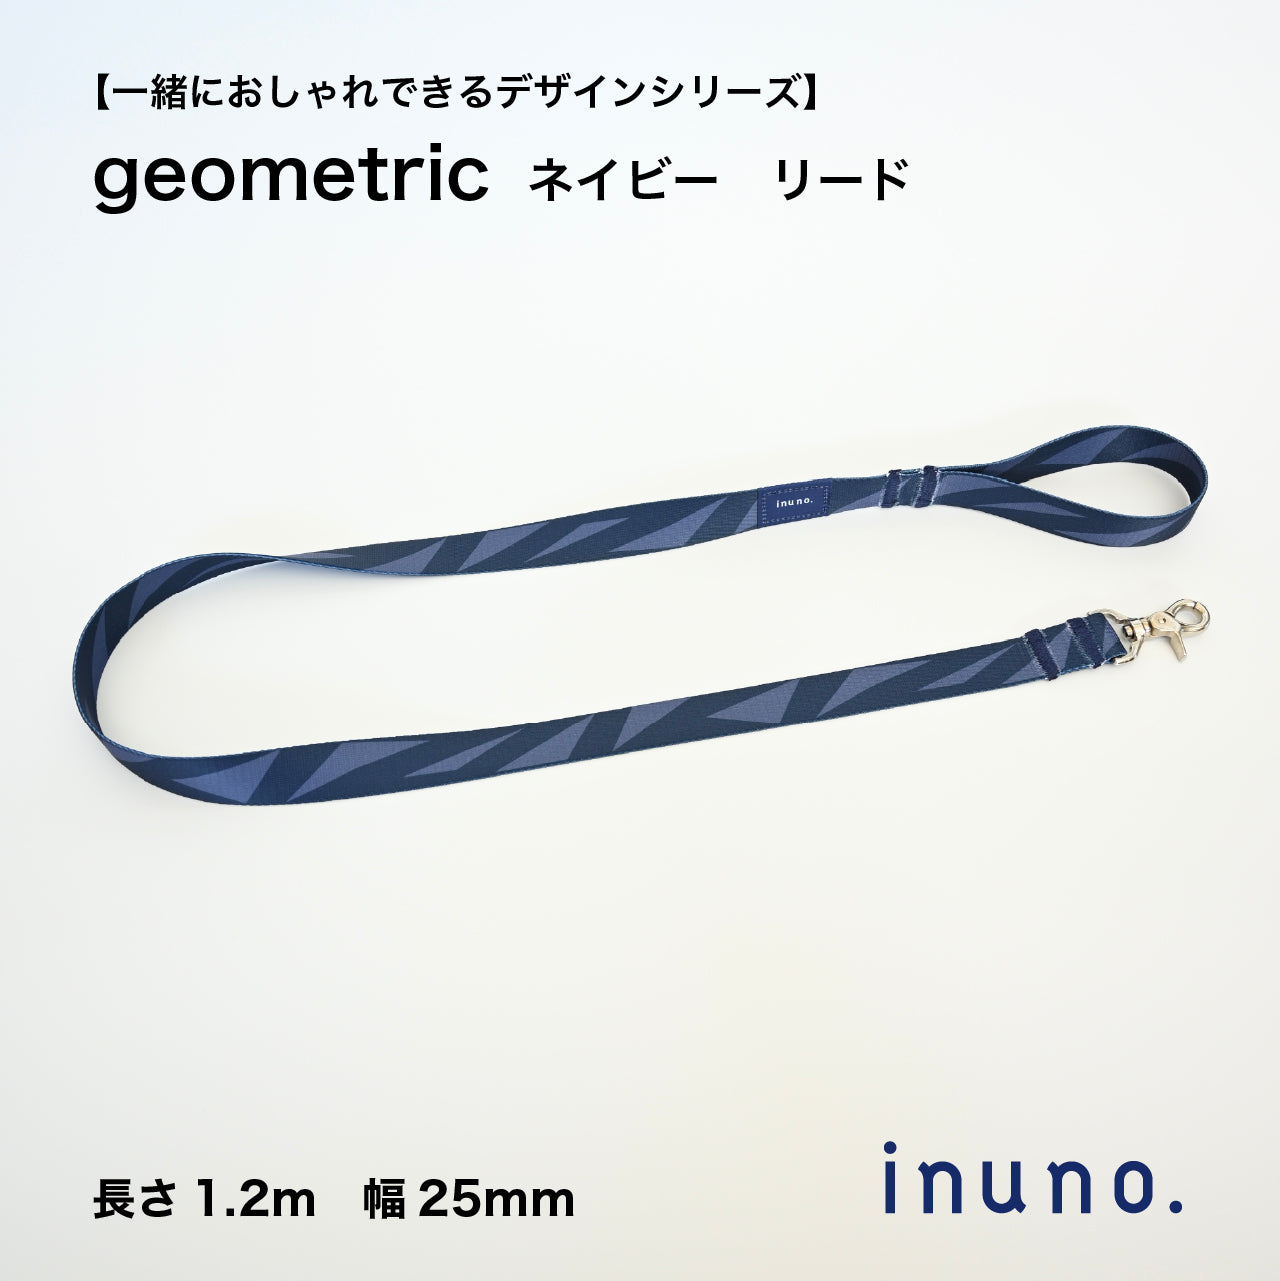 リード「geometric」ネイビー – inuno.